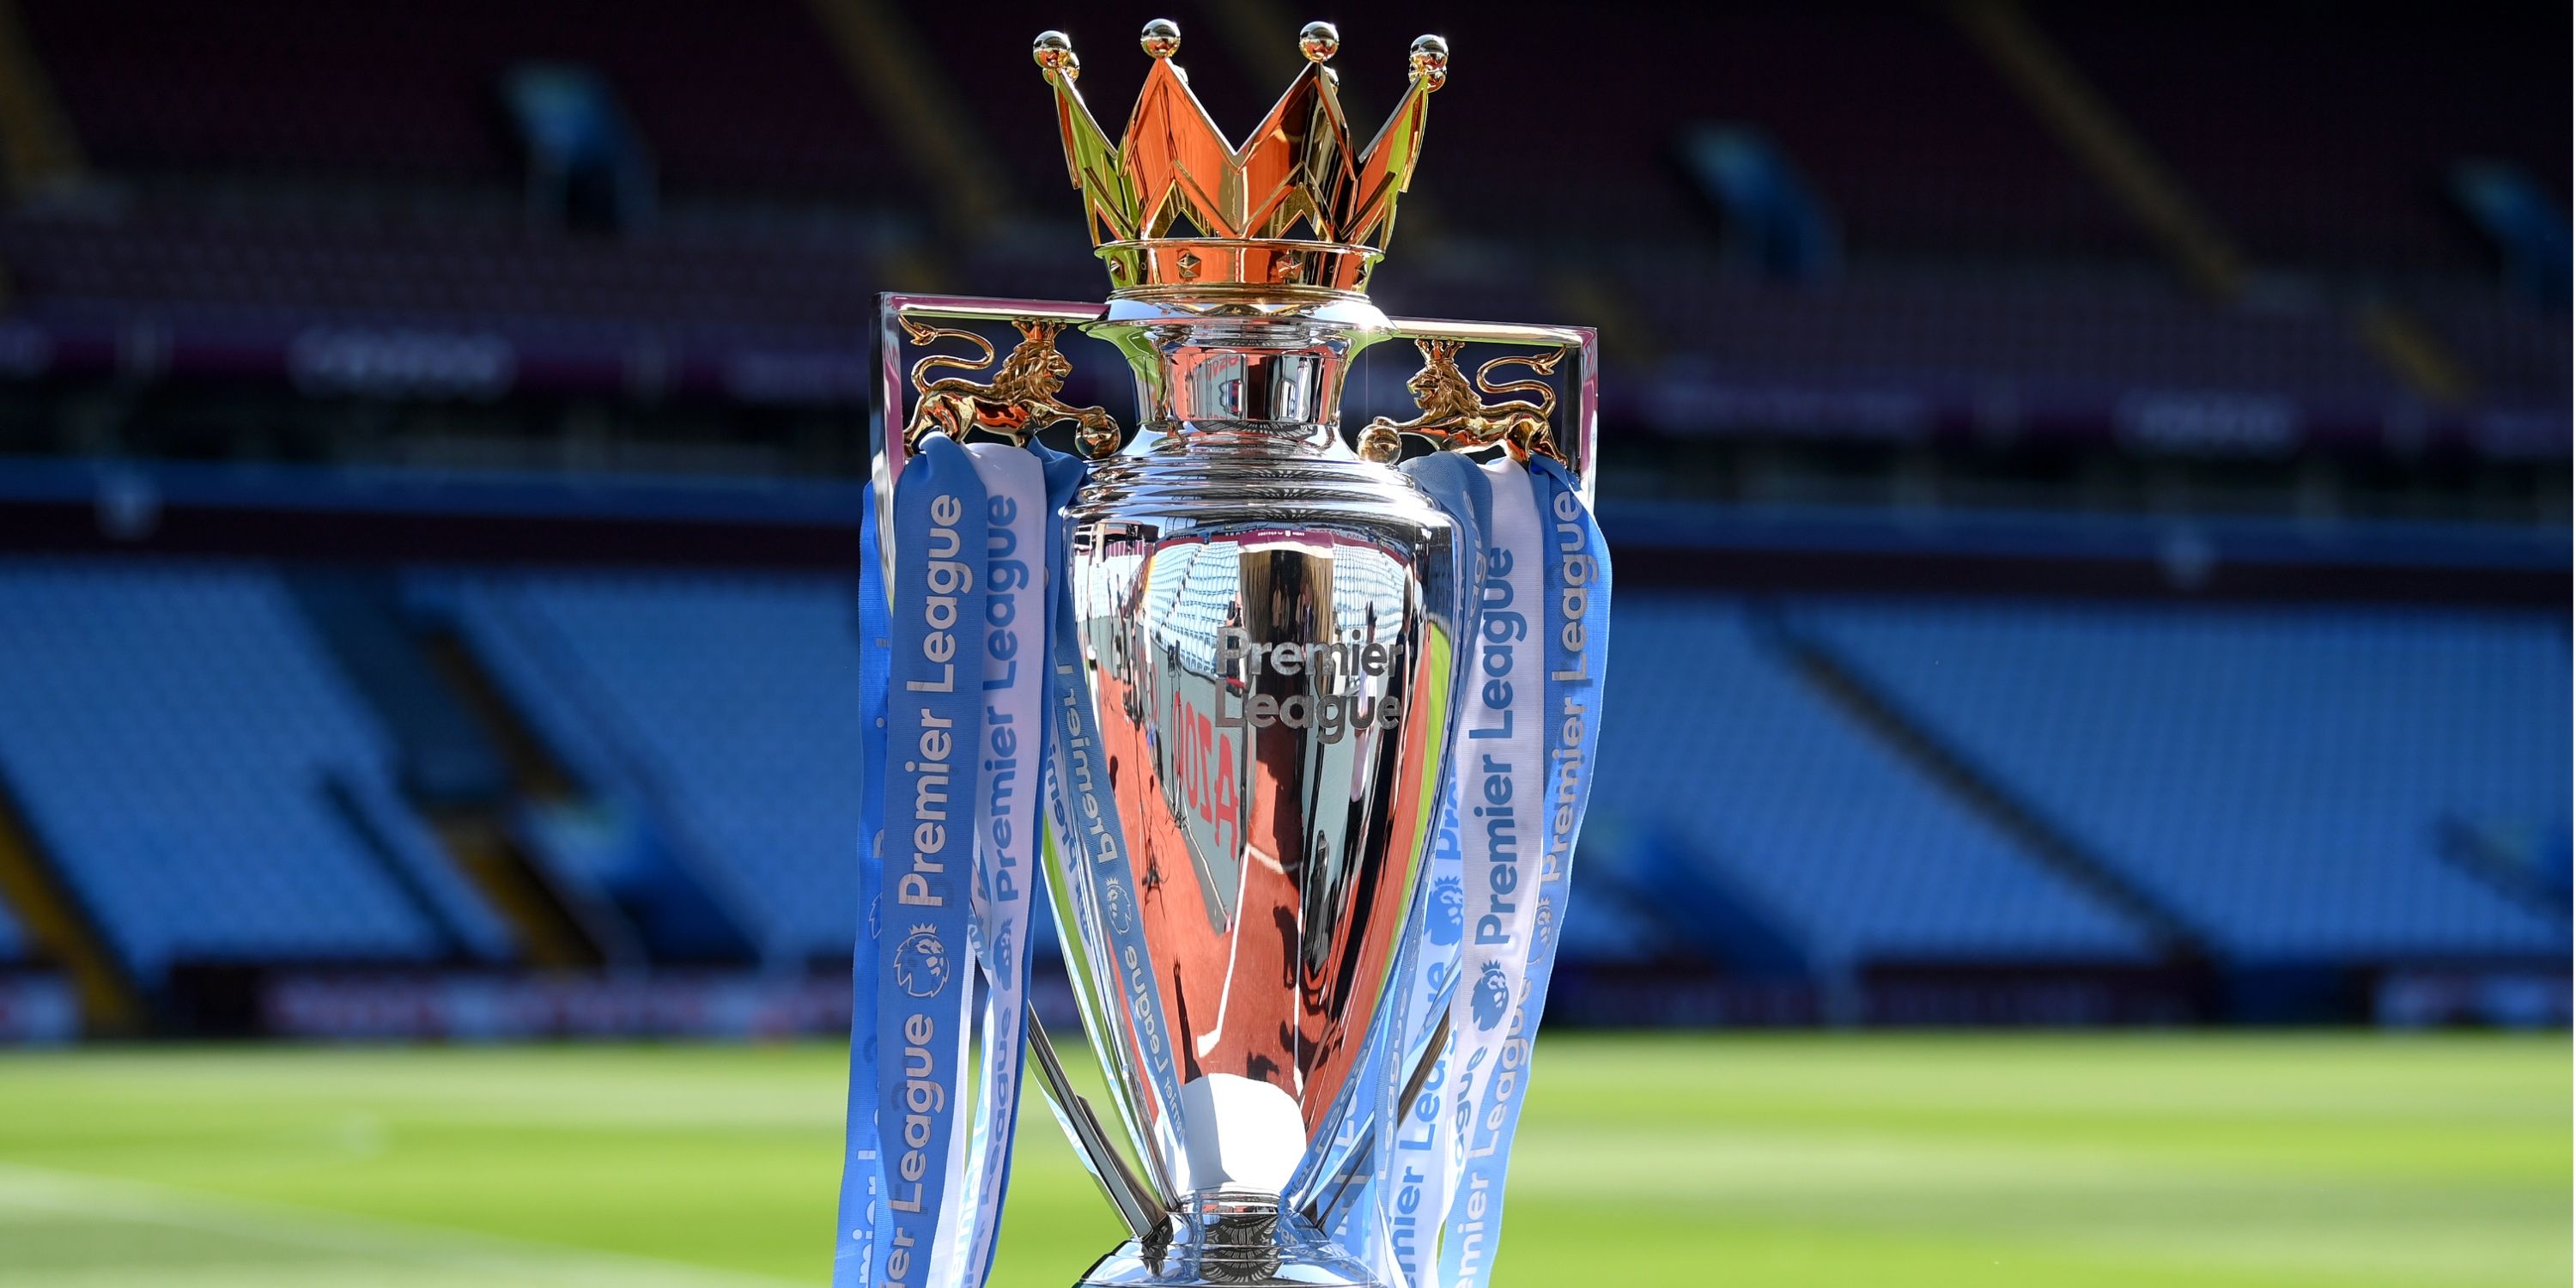 Premier League trophy.